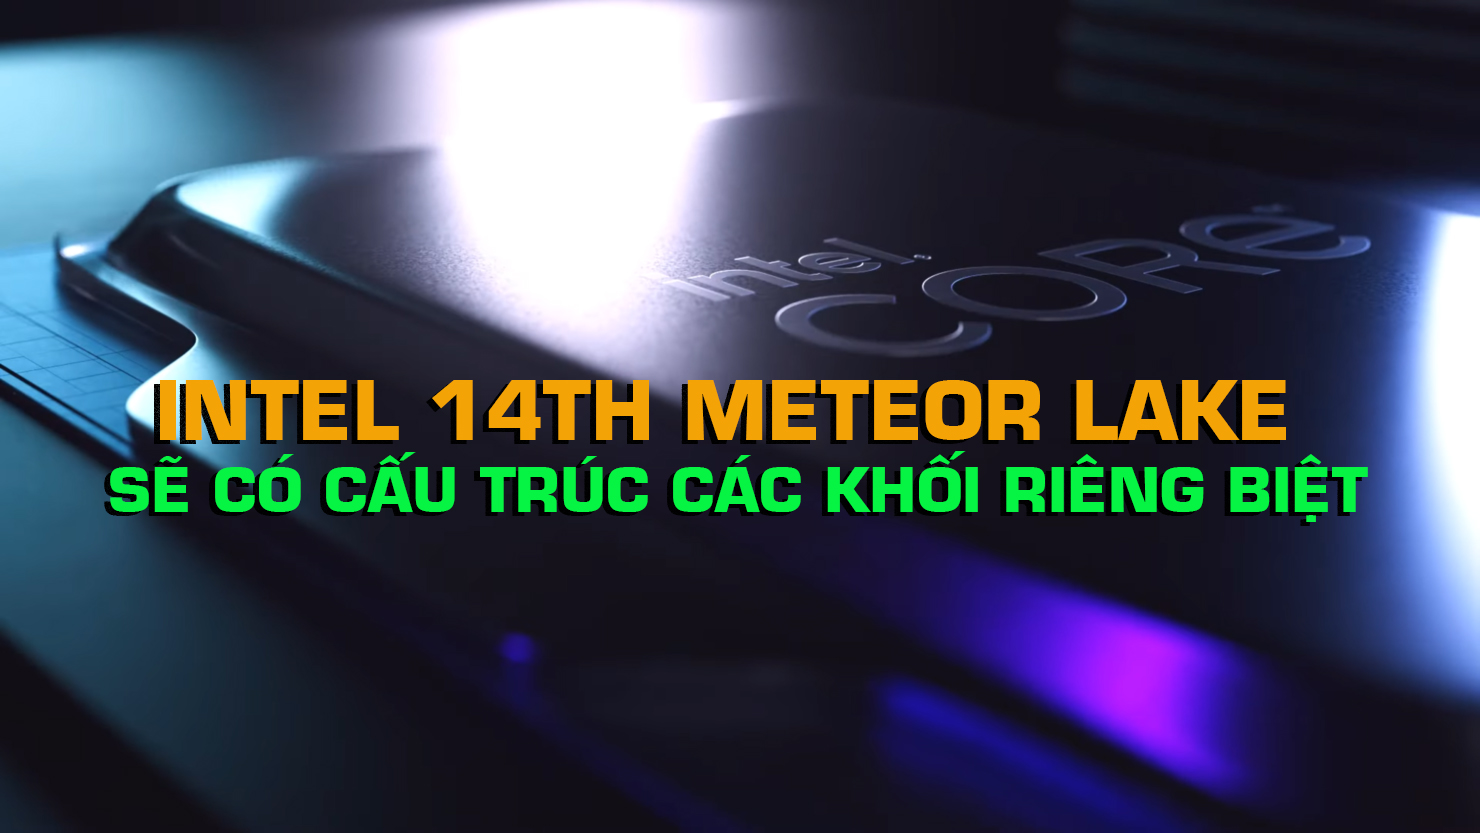 Intel 14th Meteor Lake sẽ có cấu trúc các khối riêng biệt